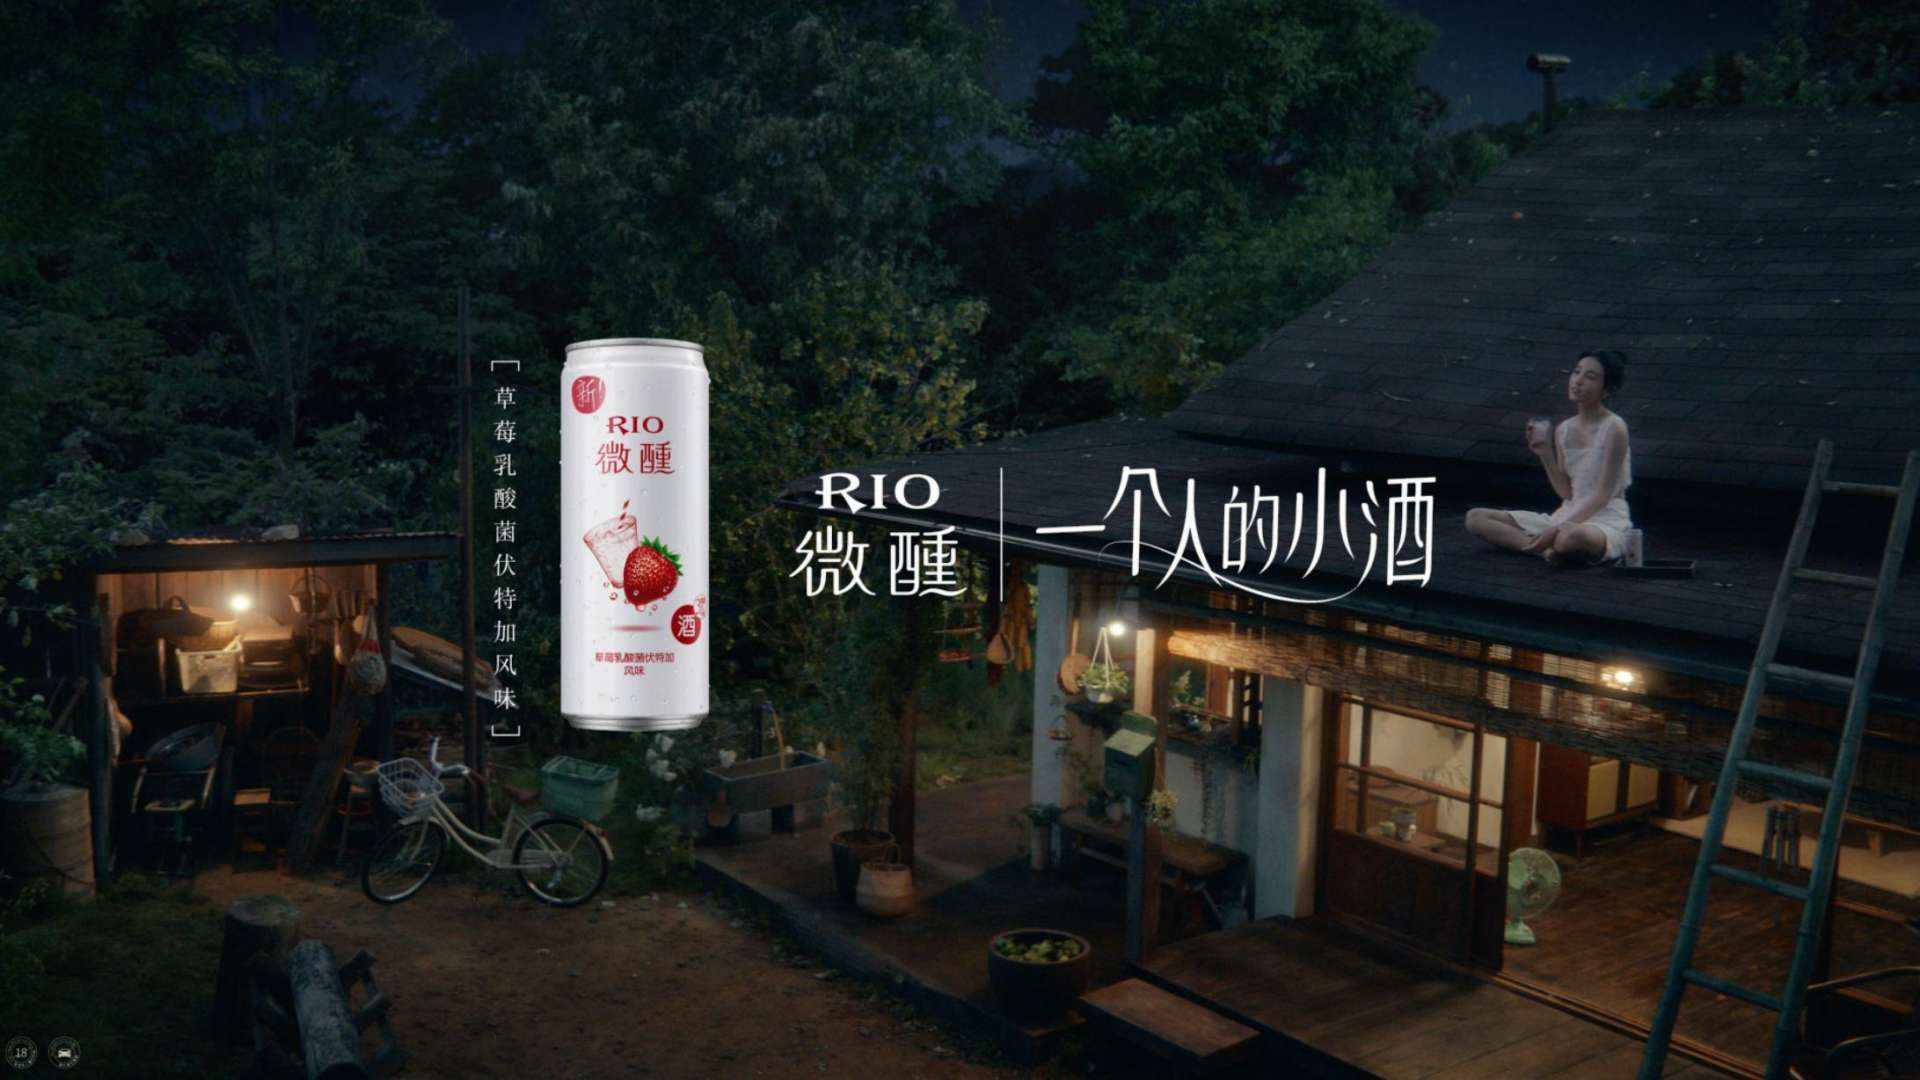 RIO微醺x张子枫 草莓篇